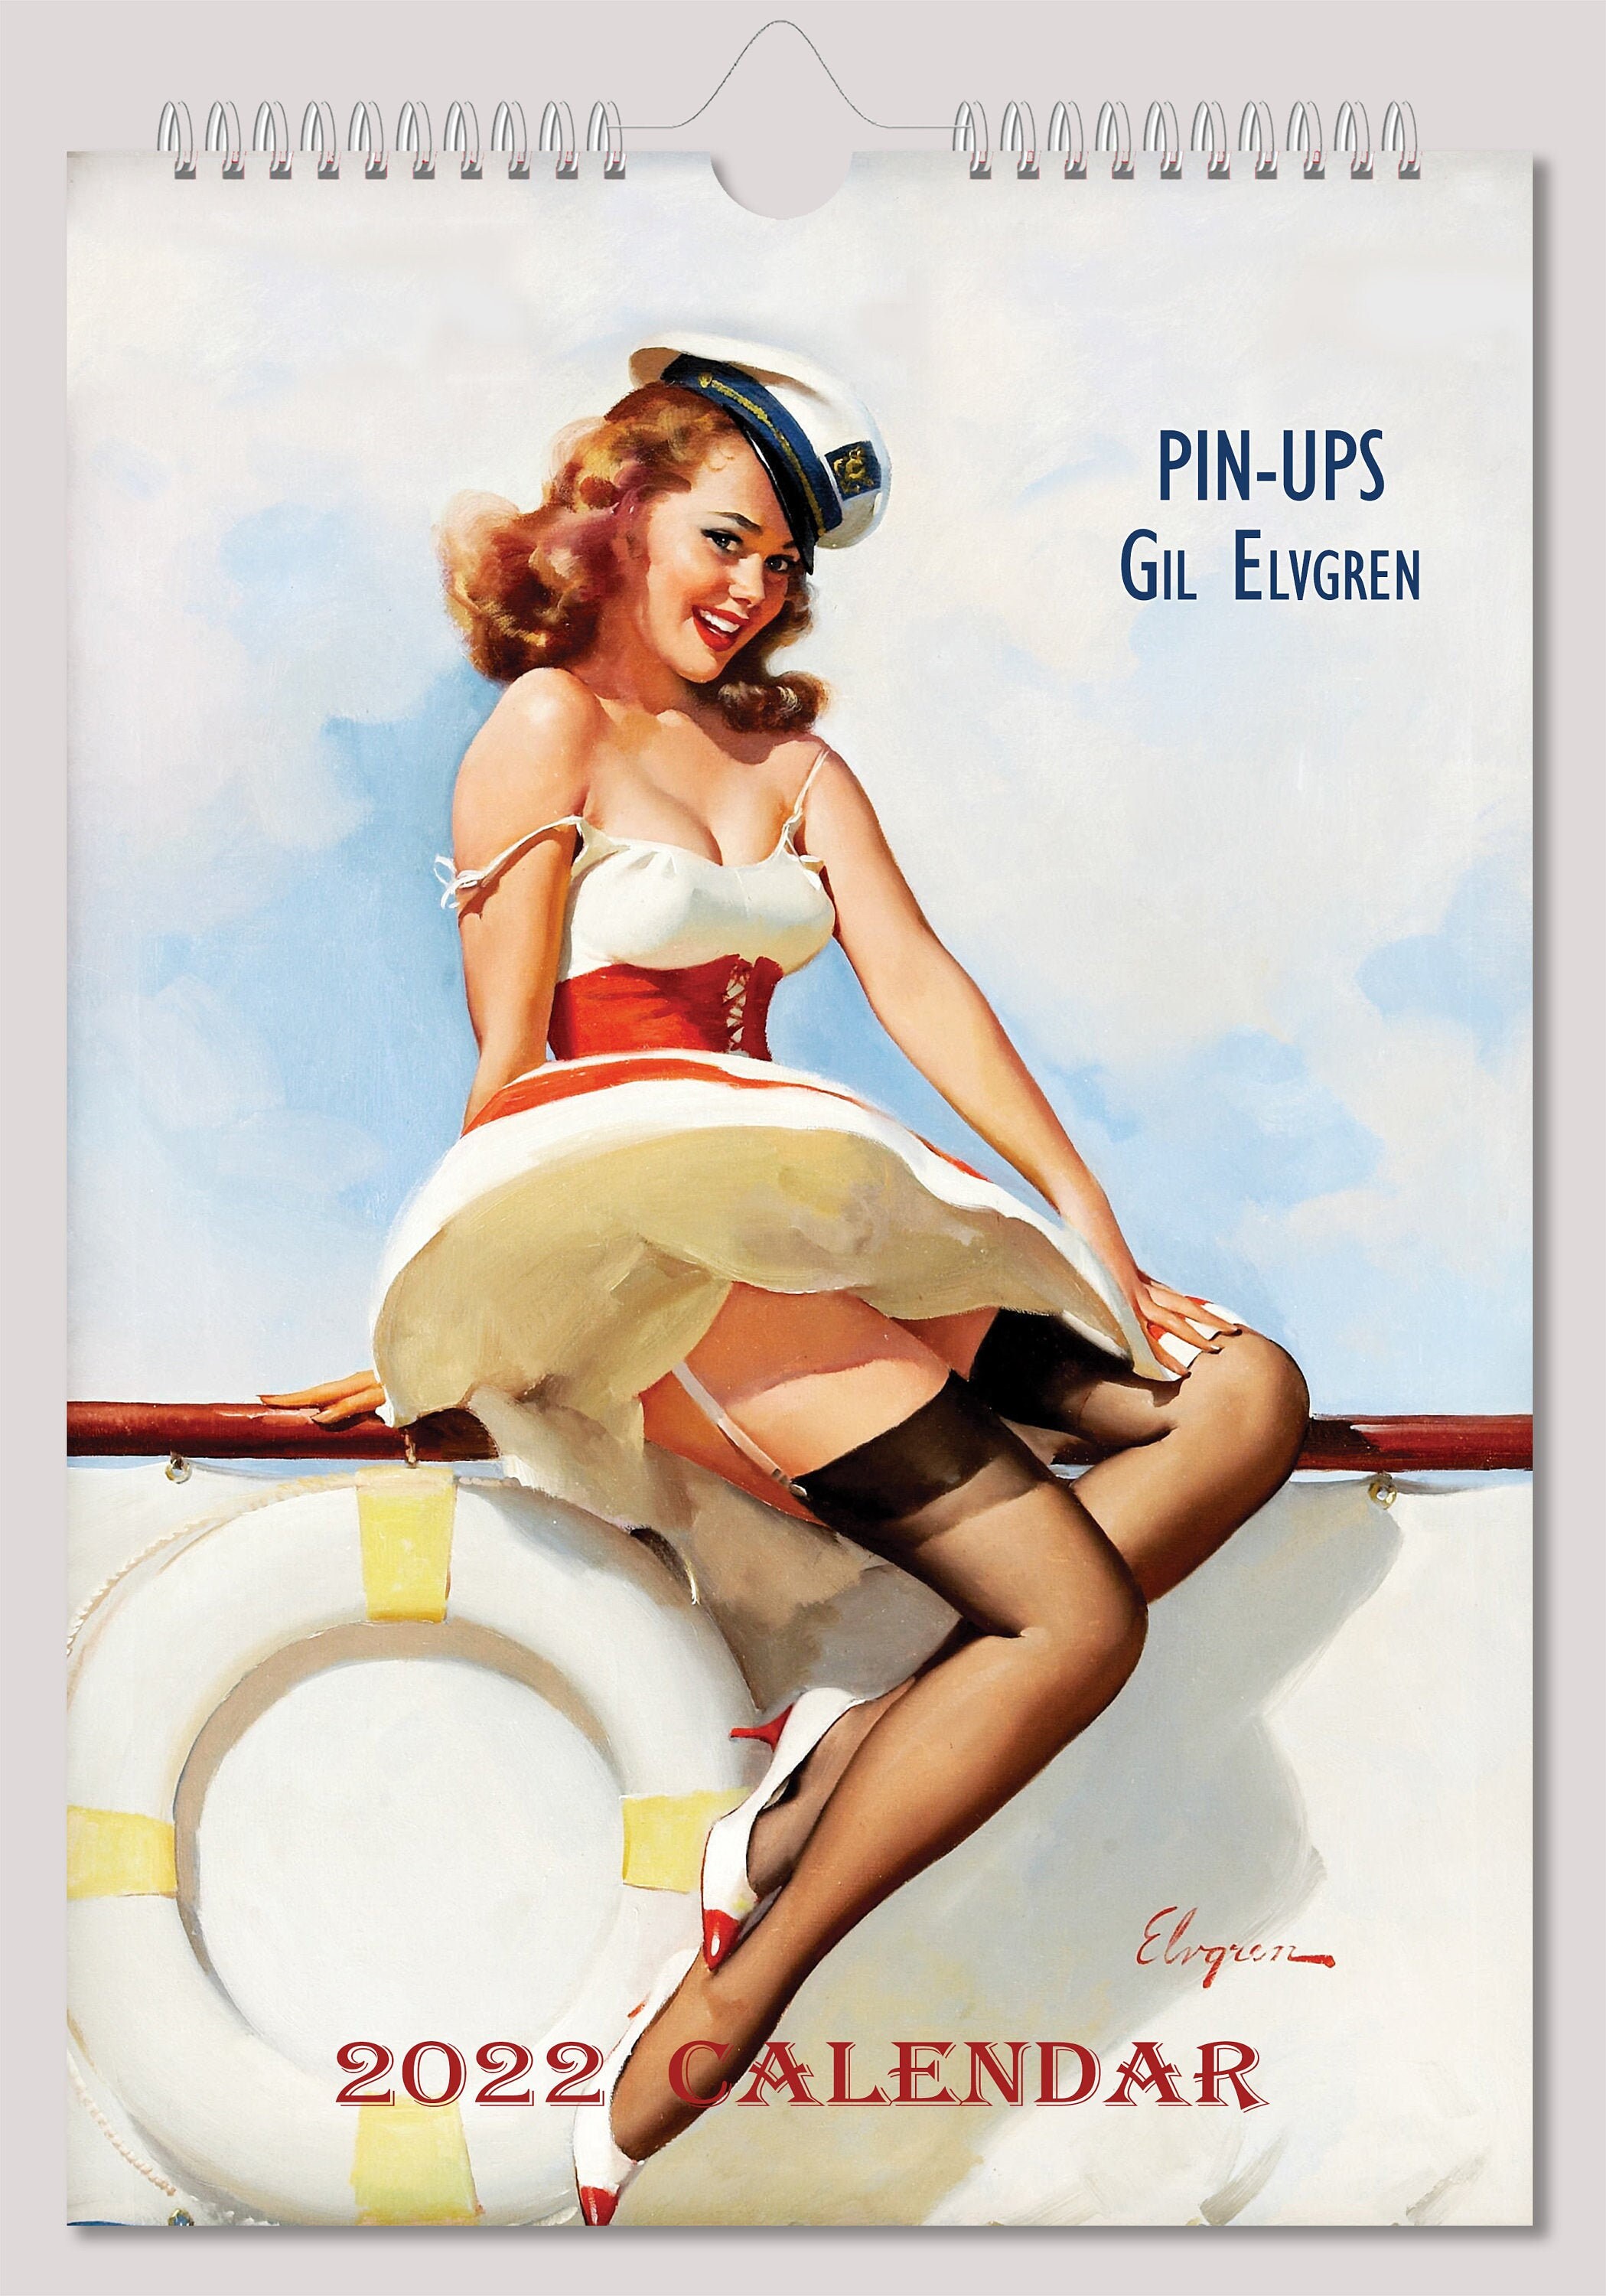 Gil Elvgren Wall Calendar 2022 Pin Up Girl Retro Vintage A4 Etsy